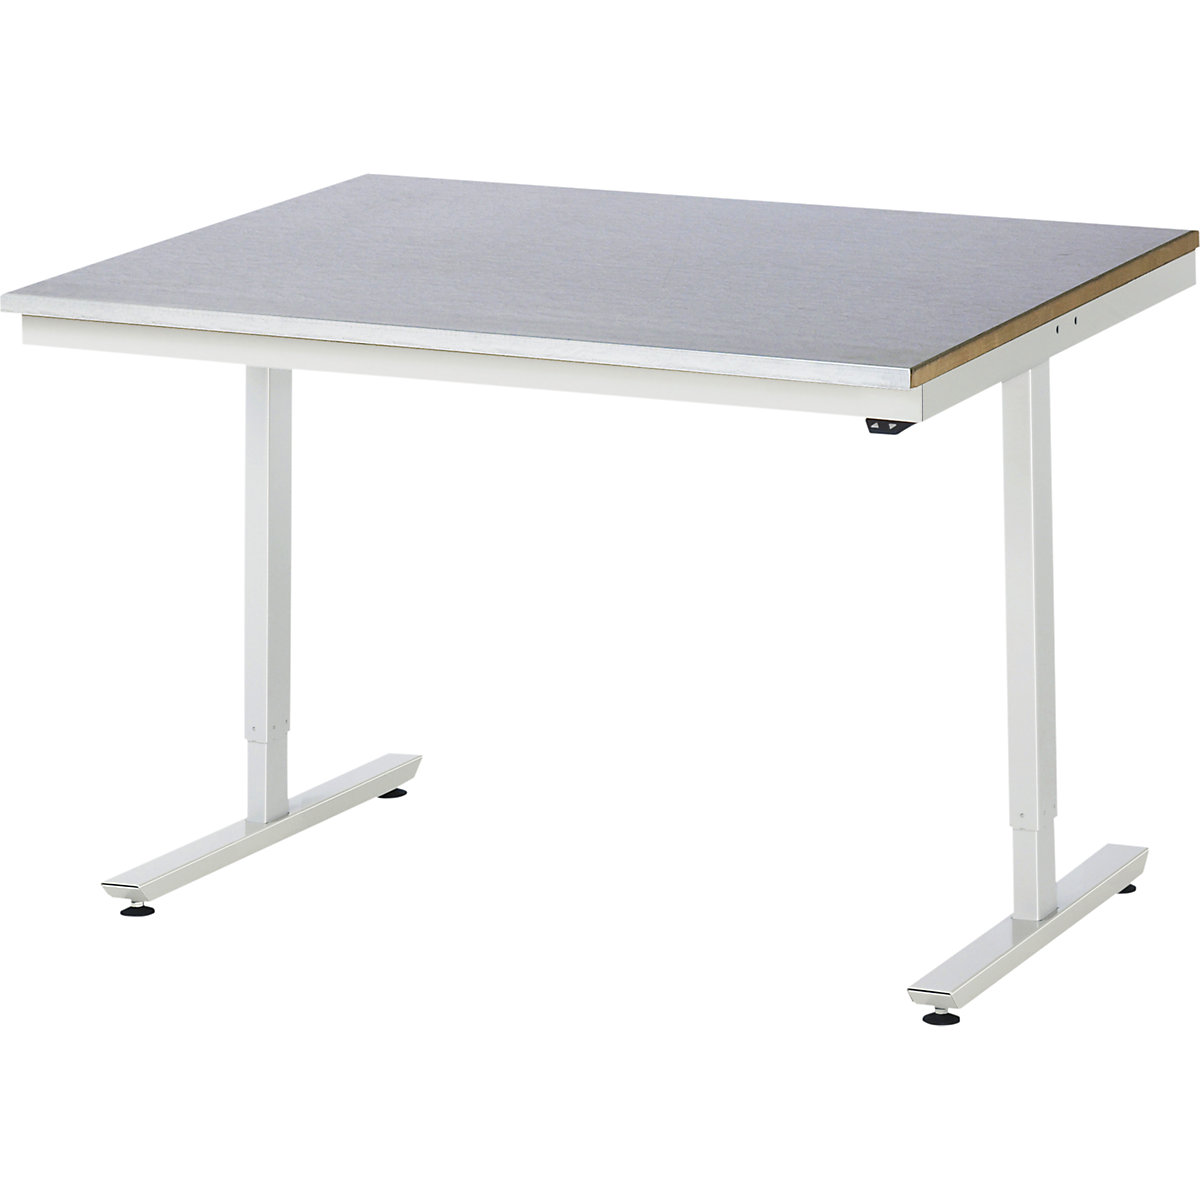 Psací stůl s elektrickým přestavováním výšky – RAU, ocelový povlak, nosnost 150 kg, š x h 1250 x 1000 mm-8